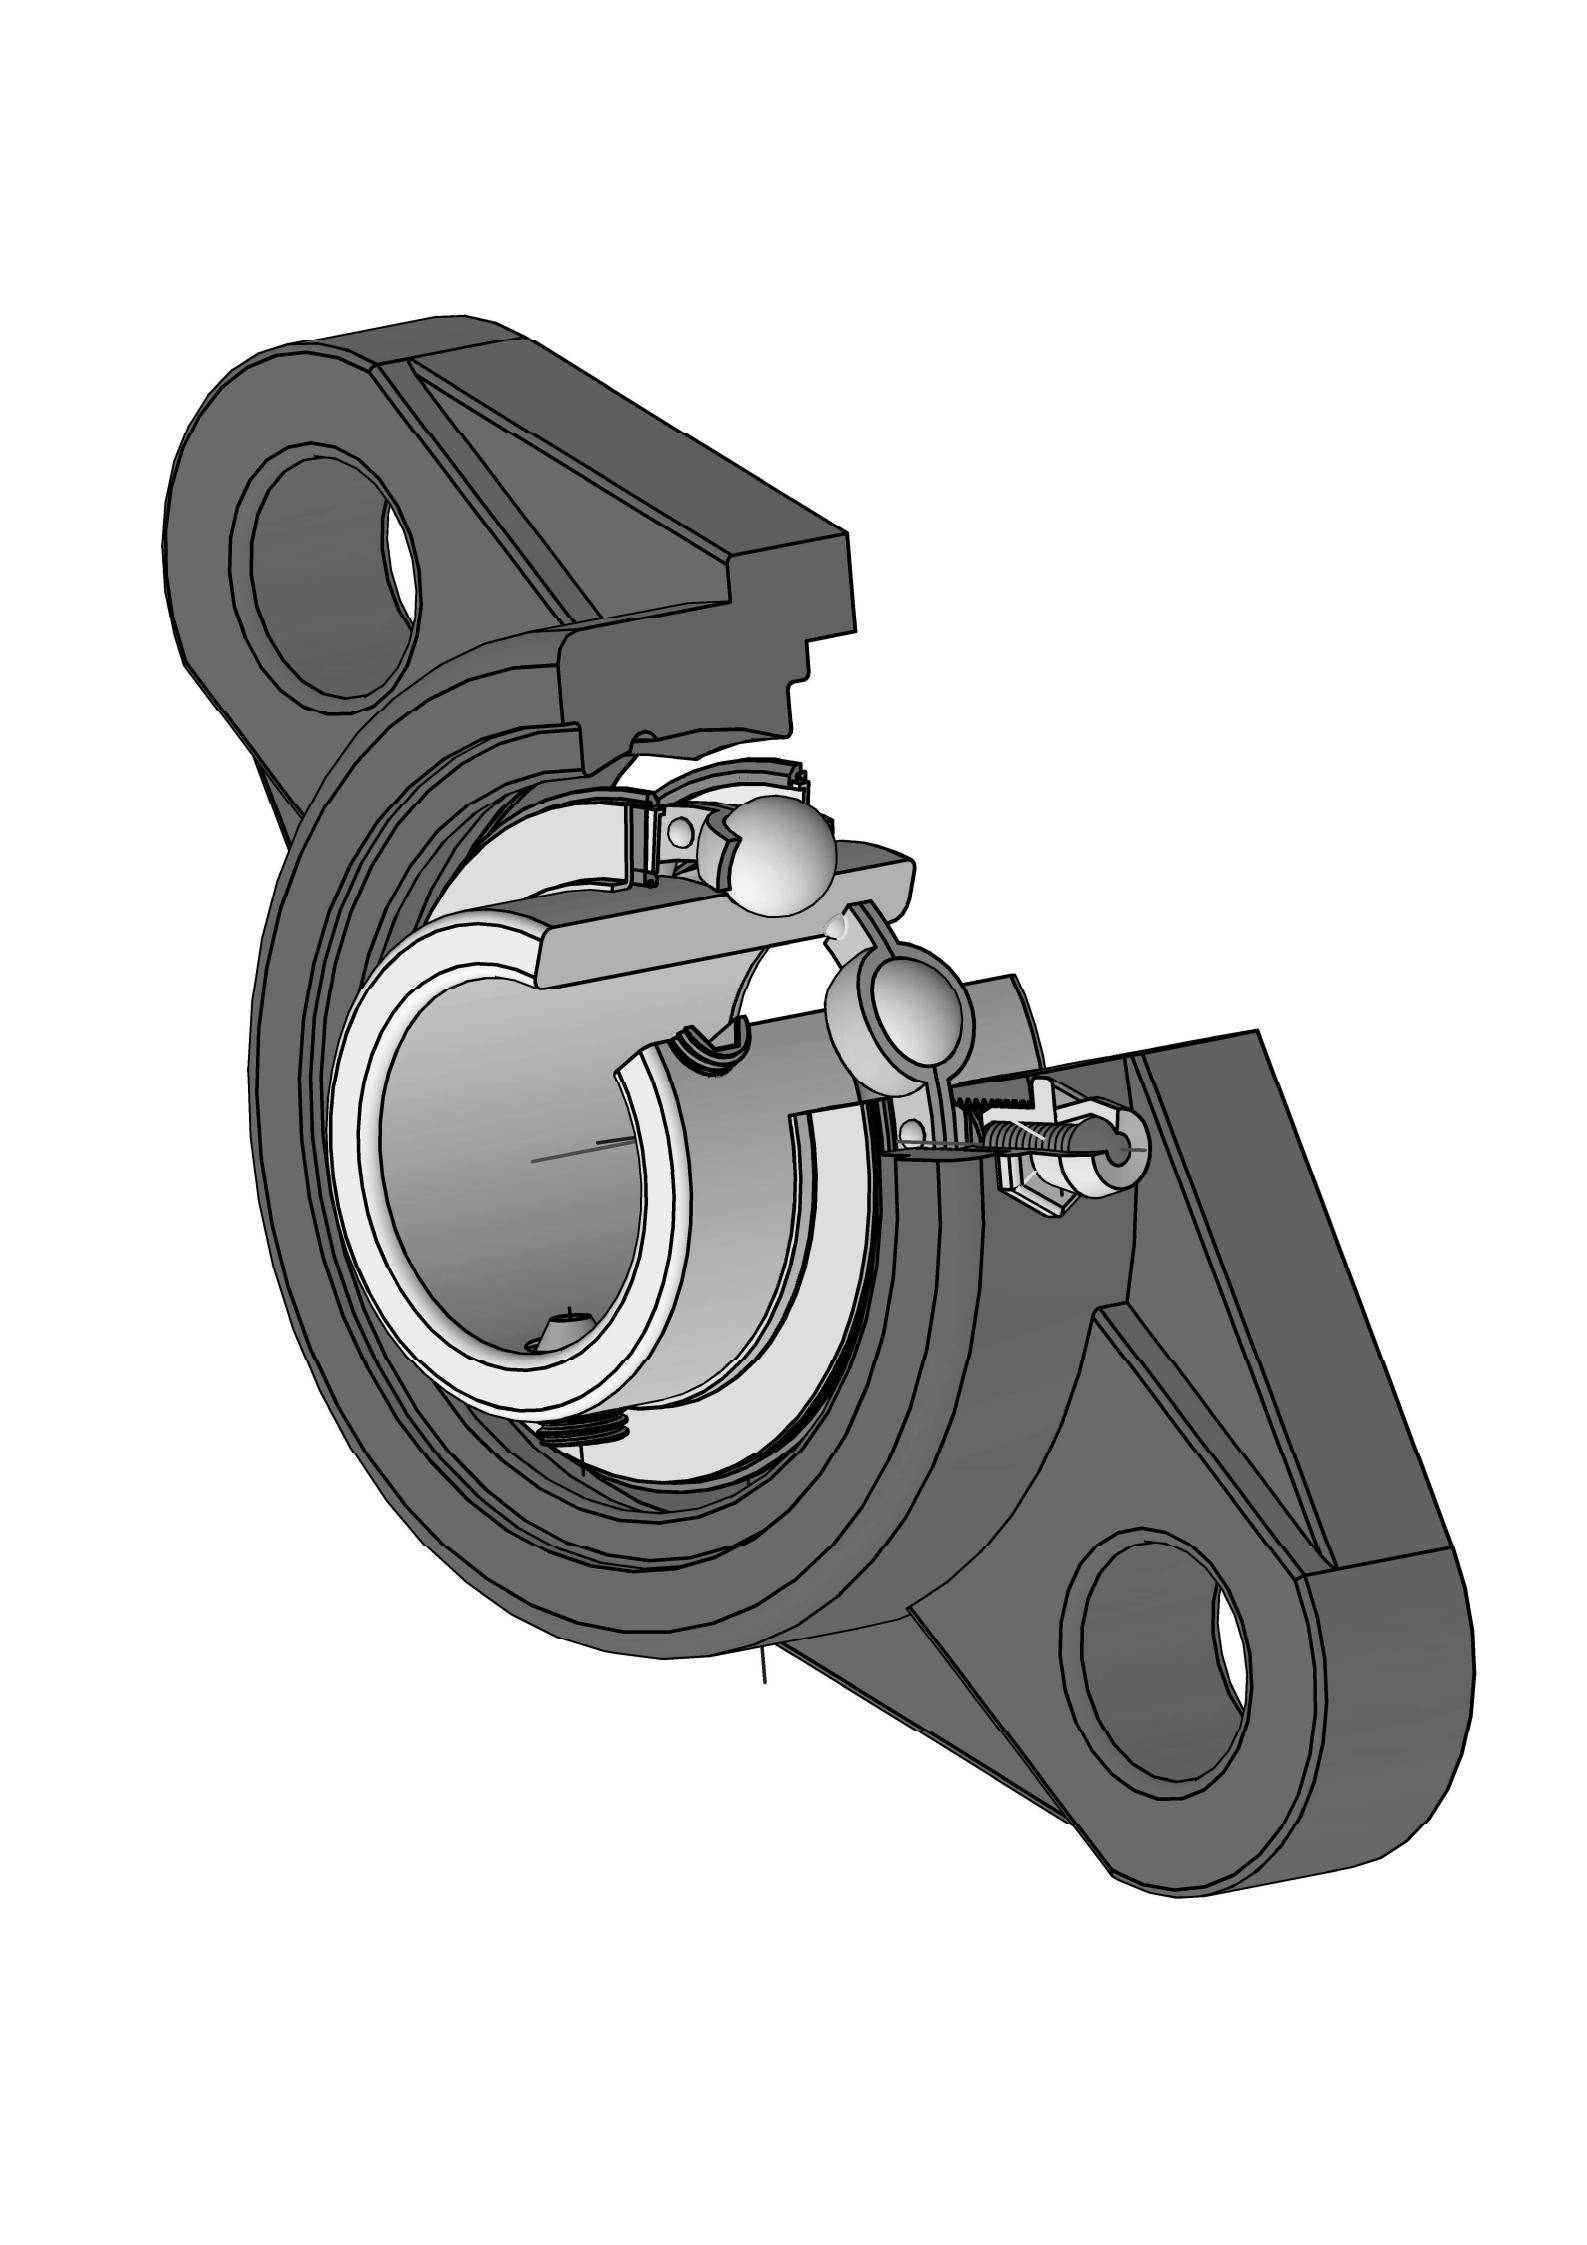 UCFT205-16 Roa Bolt Oval Flange mitondra tarika misy 1 santimetatra